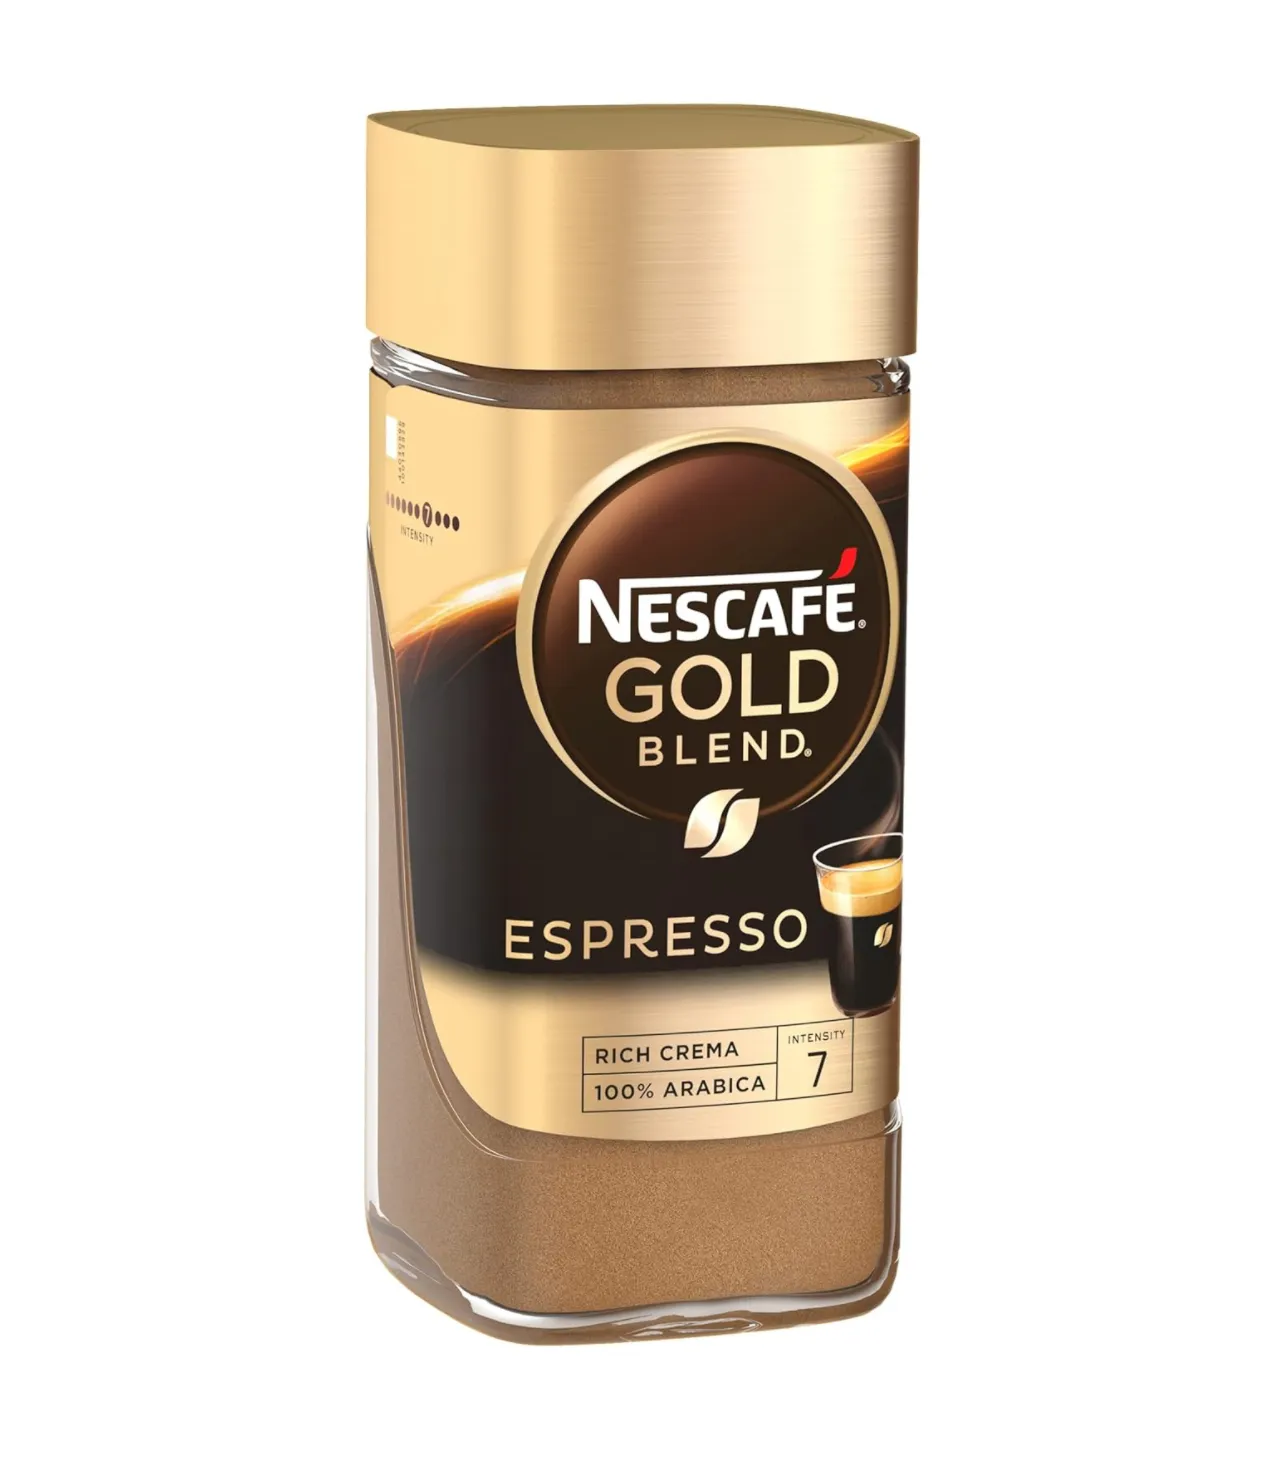 Nescafe Gold Proveedor al por mayor, Espresso instantáneo, café rico de sabor fuerte con crema de café aterciopelado, 3,5 onzas